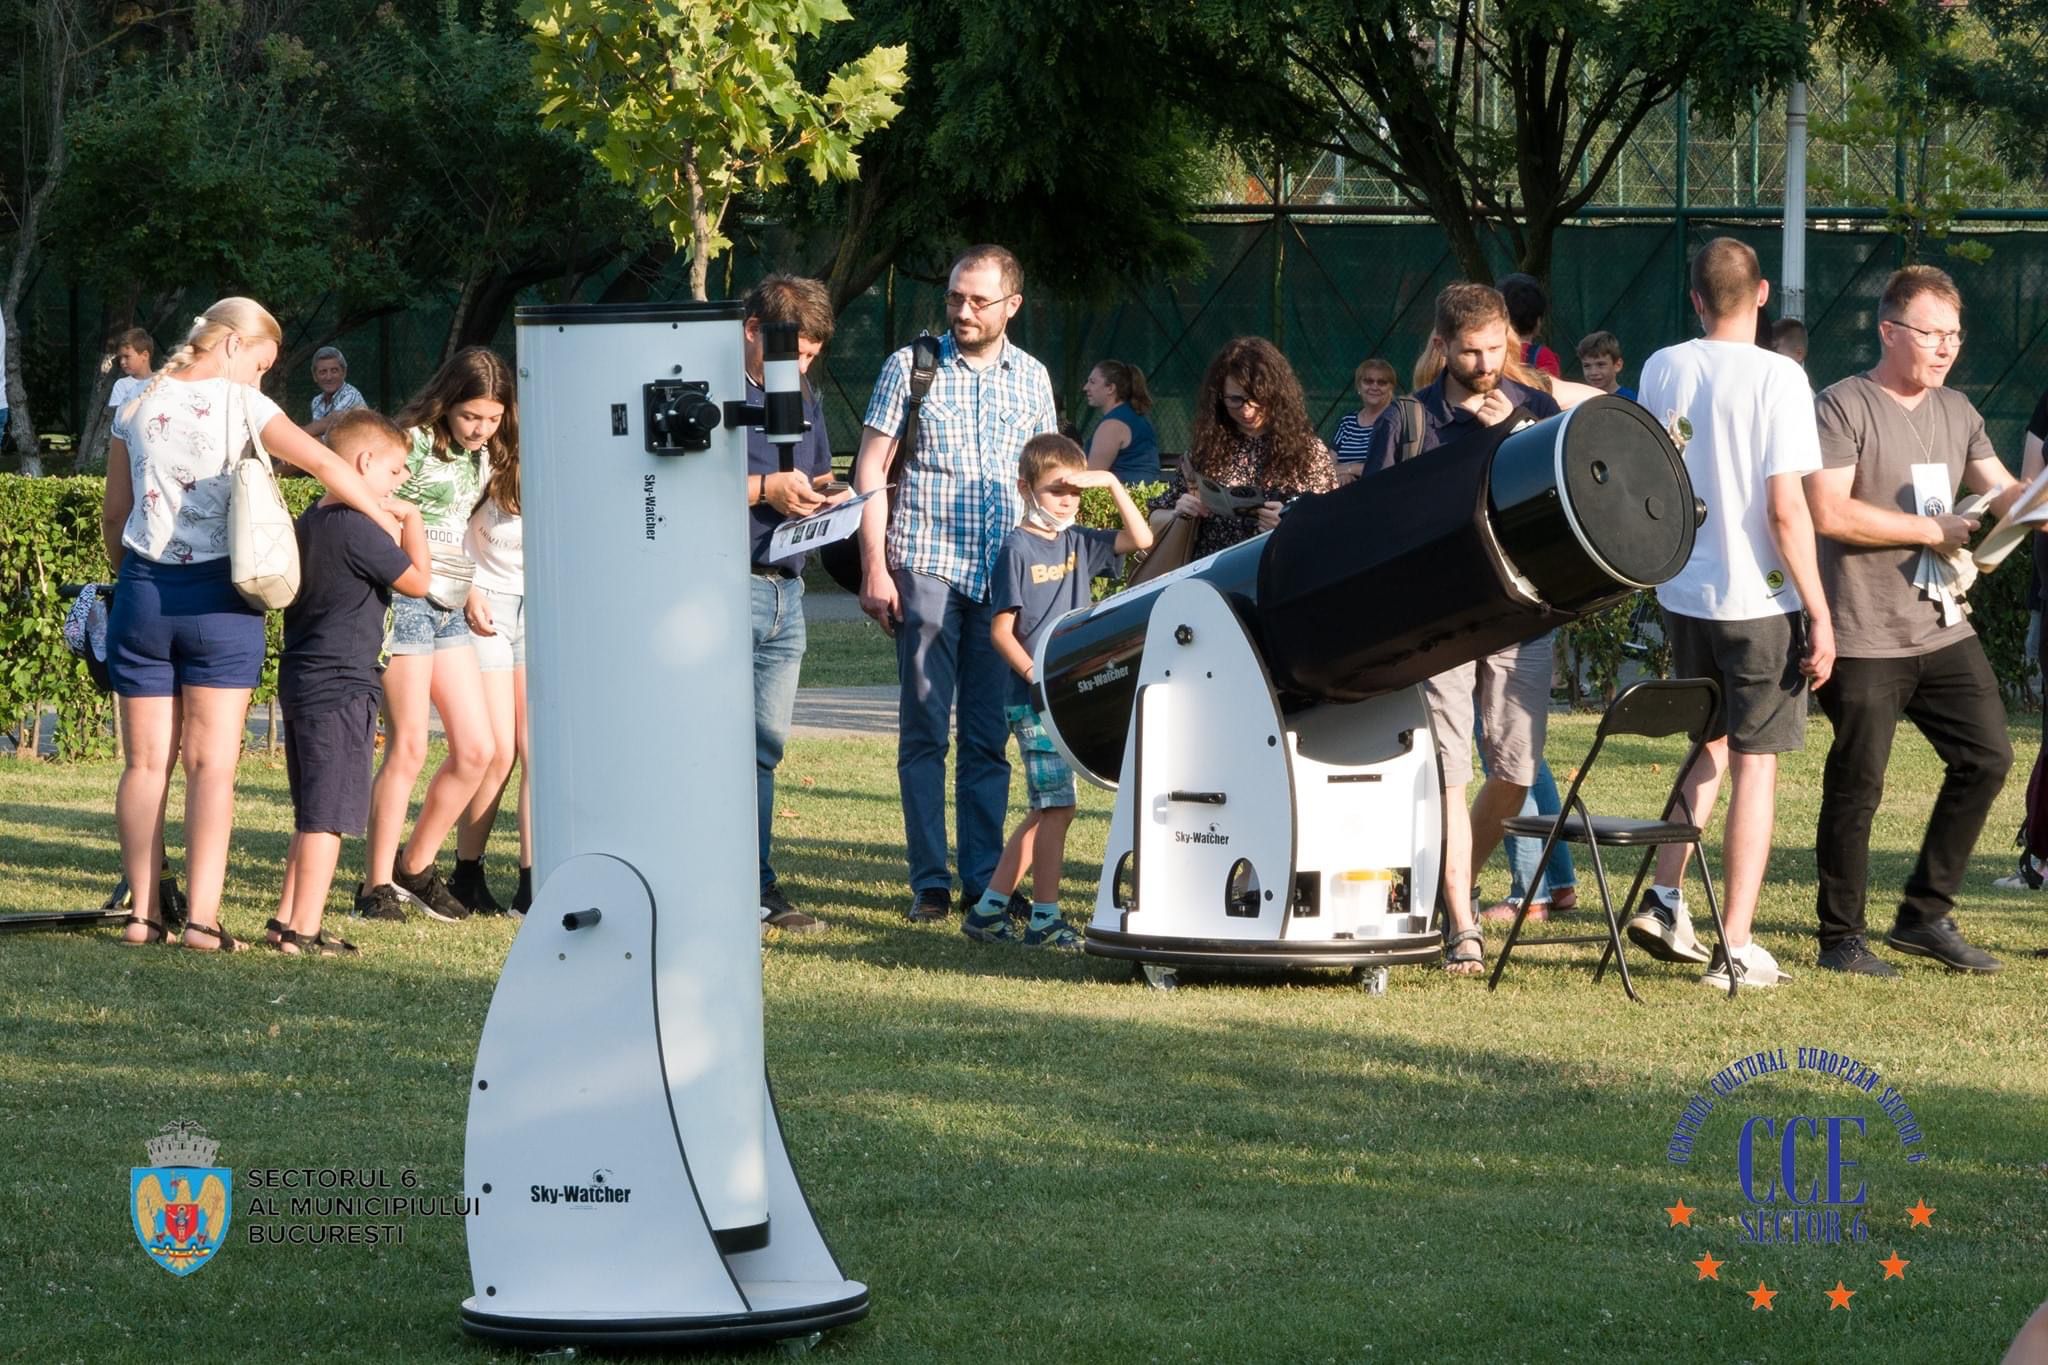 Festival Național de Astronomie, Știință și Educație în Parcul Crângași